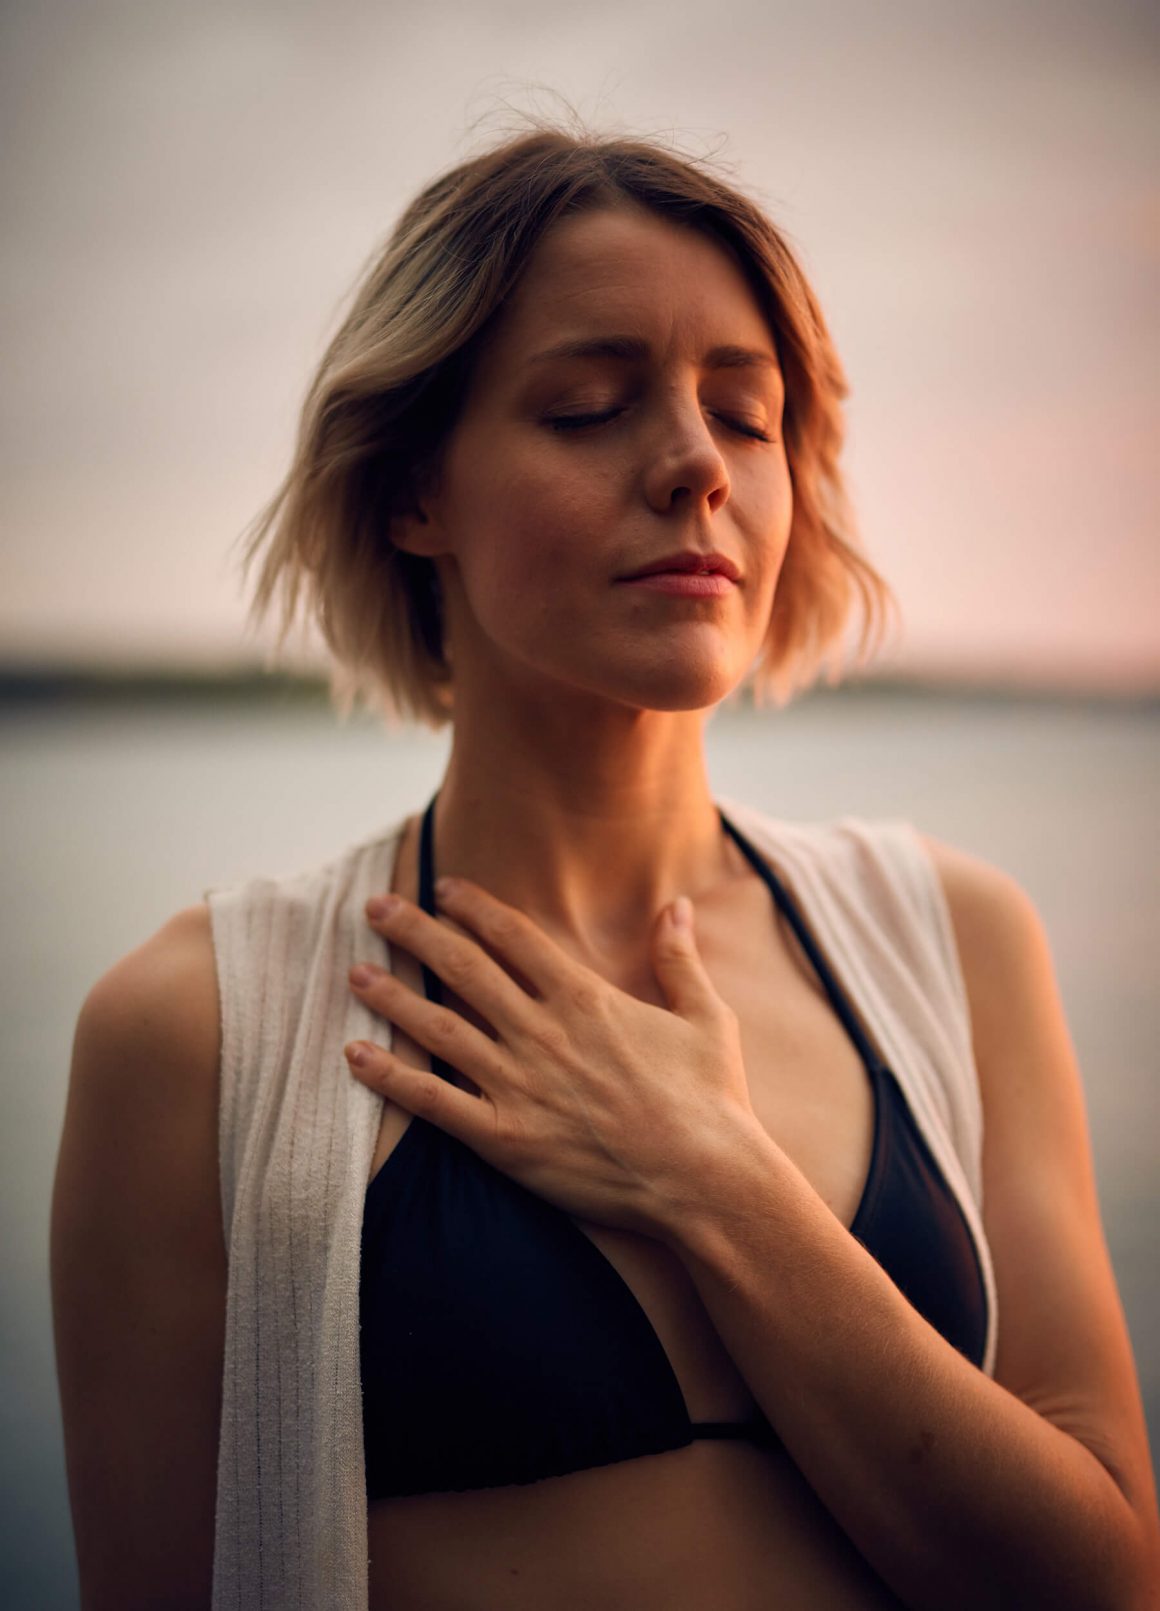 Gezieltes Atmen kann dein Schmerzempfinden beeinflussen